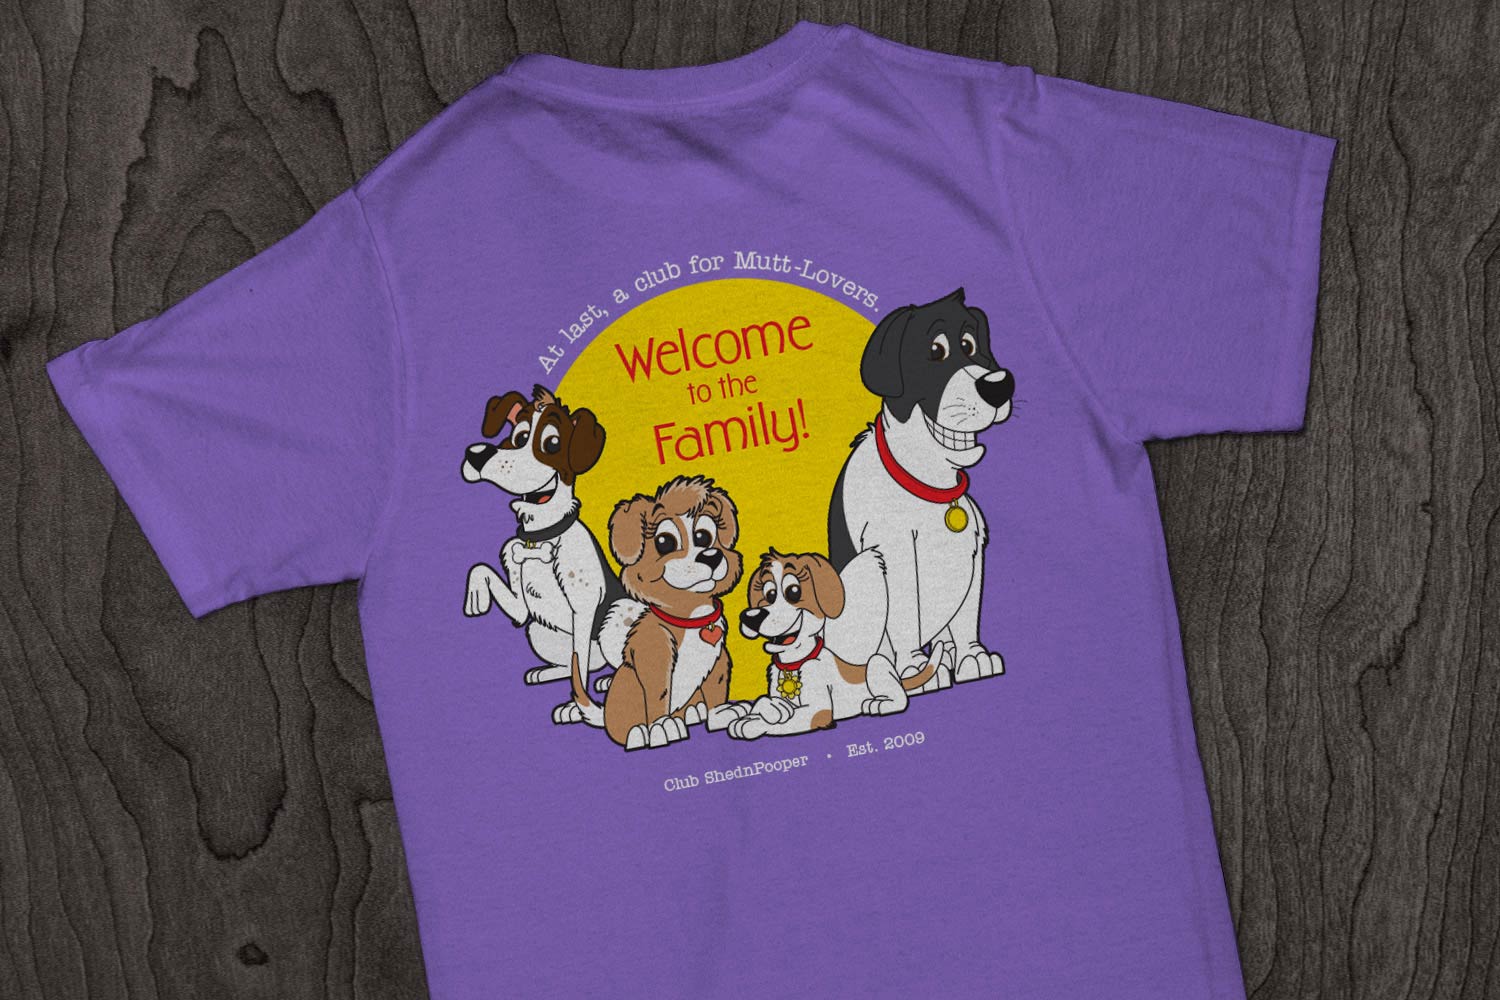 ShednPooper Family Illustration and T-Shirt Design